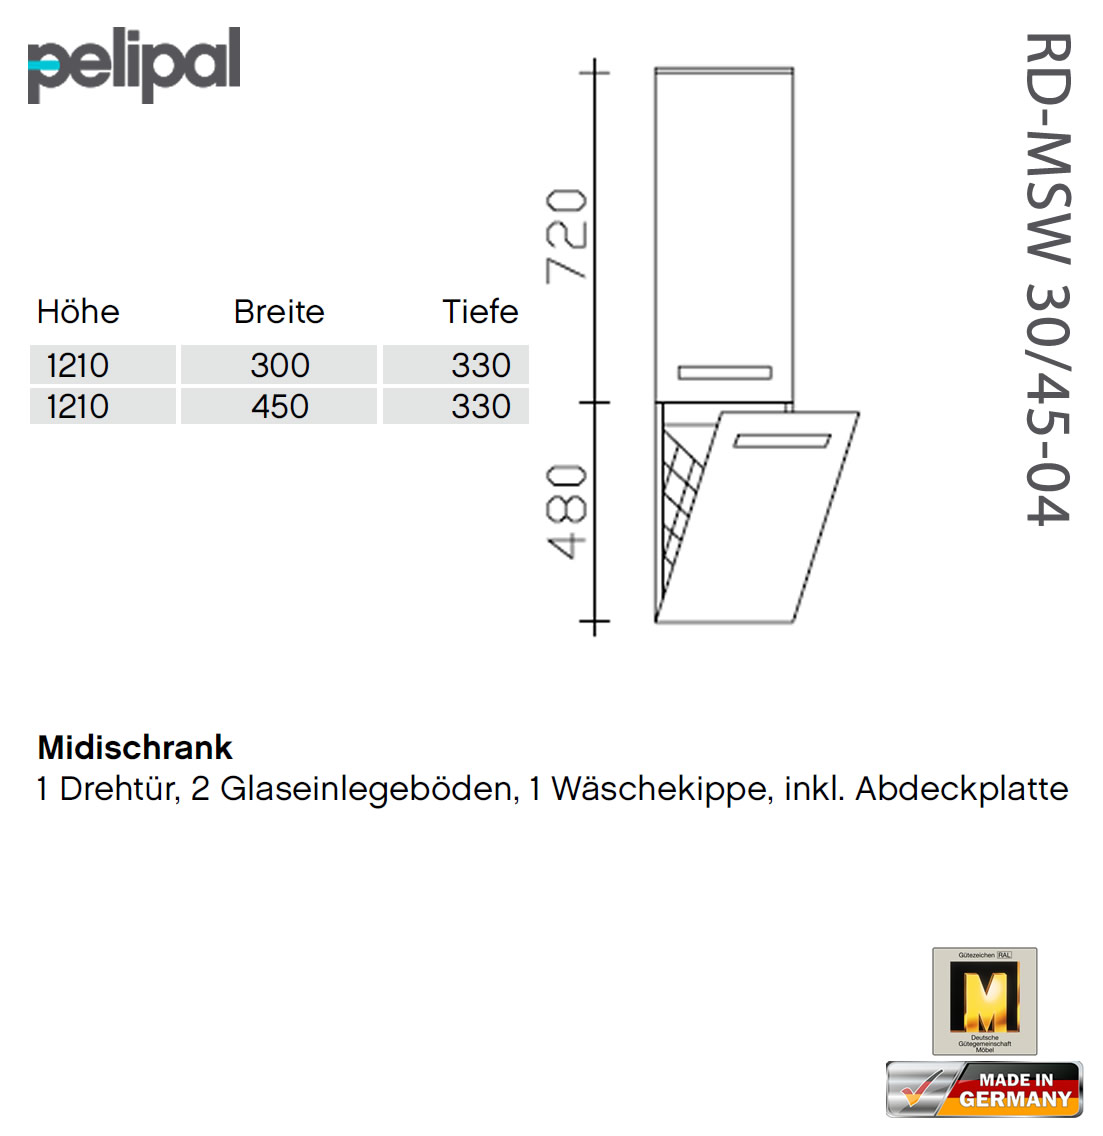 7005 45-04 und - cm RD-MSW 30-04 Pelipal Midischrank RD-MSW 121